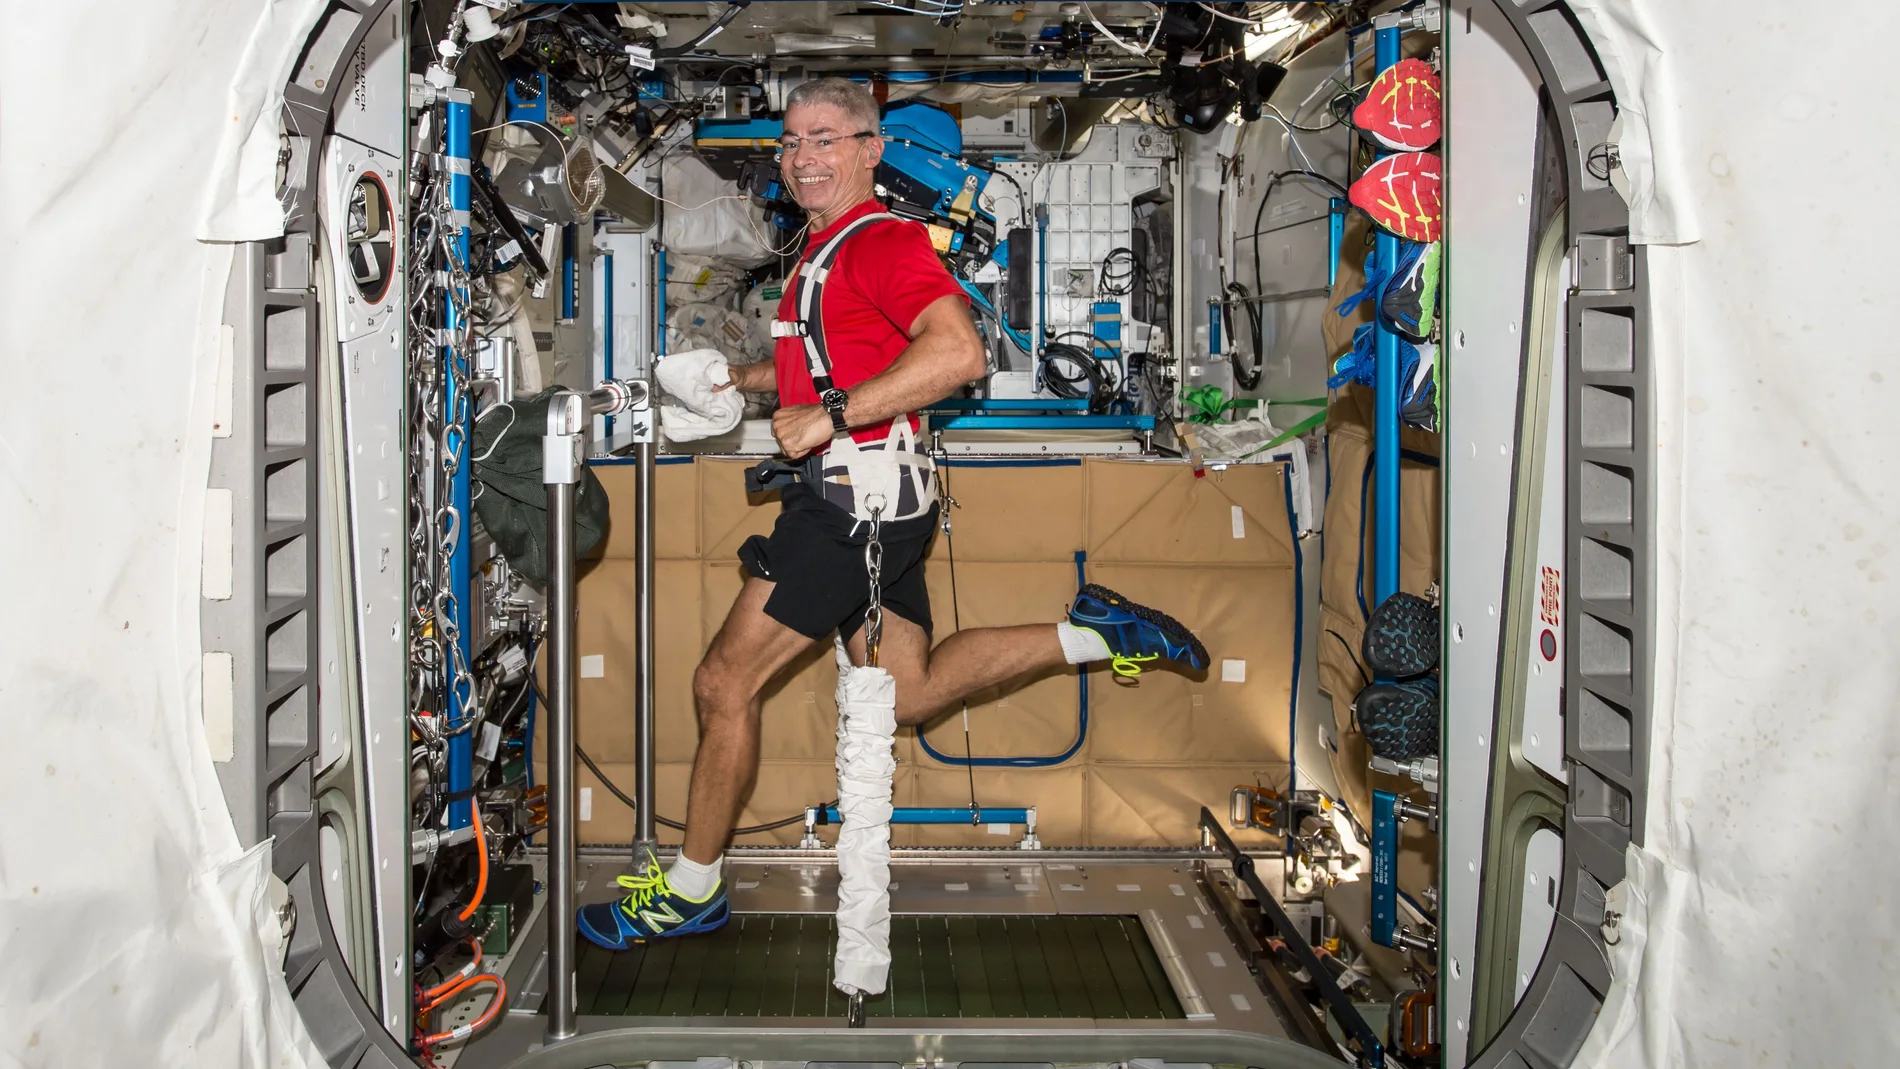 El astronauta Mark T. Vande Hei hace ejercicios en la cinta de correr de resistencia, en una imagen de archivo de la NASA 